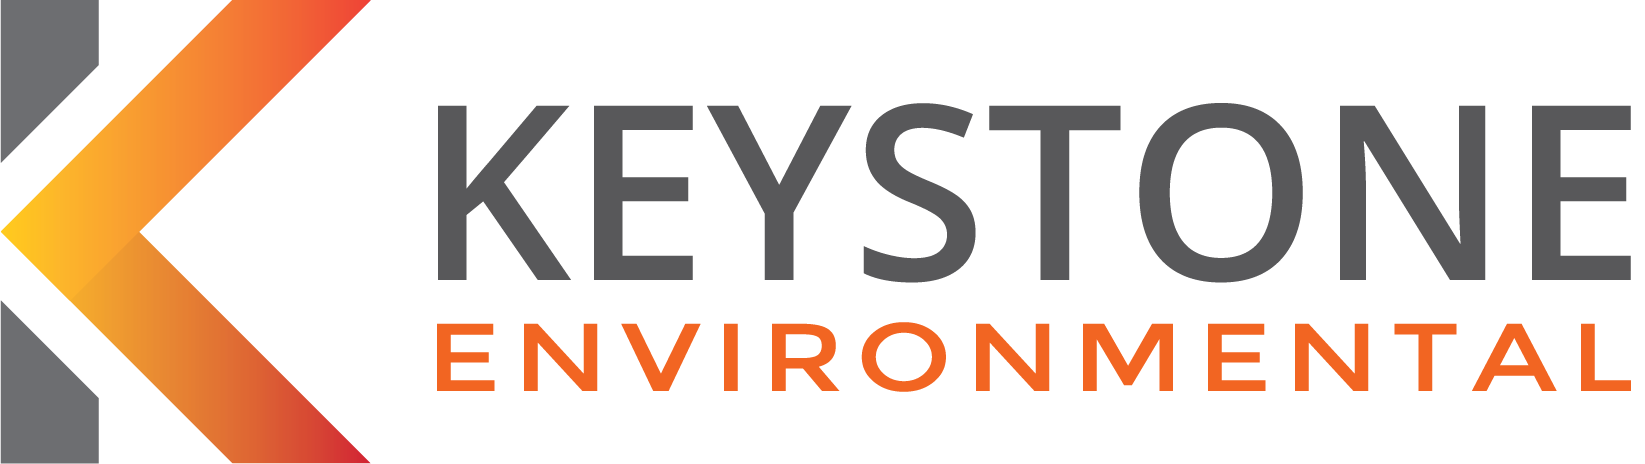 Keystone Environmental